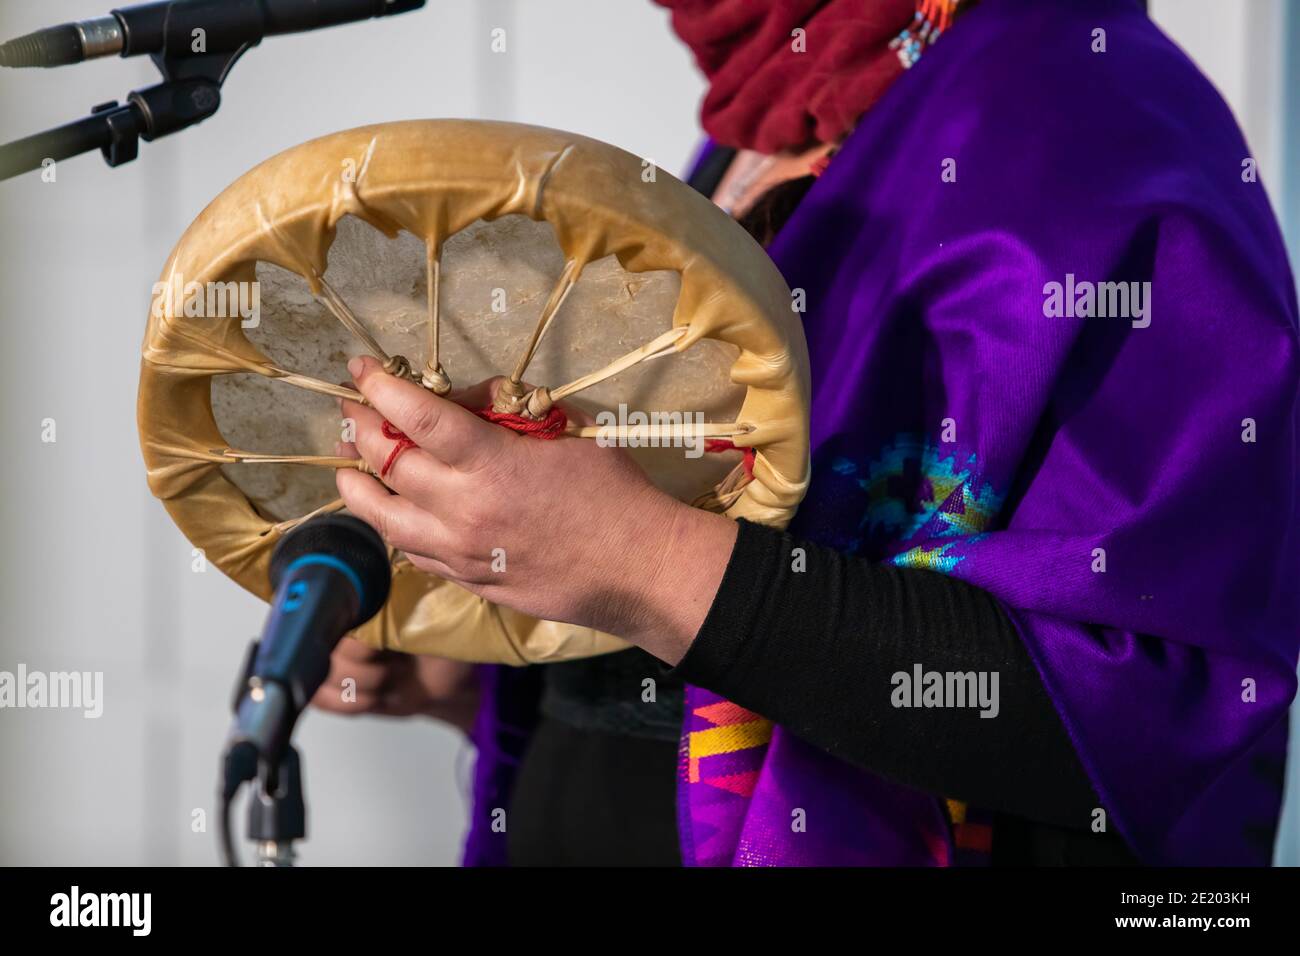 Sound-Demonstration während eines nativen Trommelworkshops. Frau in farbigen nativen Schal Holing eine Sand gemacht Trommel vor einem Mikrofon, bereit, durchzuführen. Stockfoto